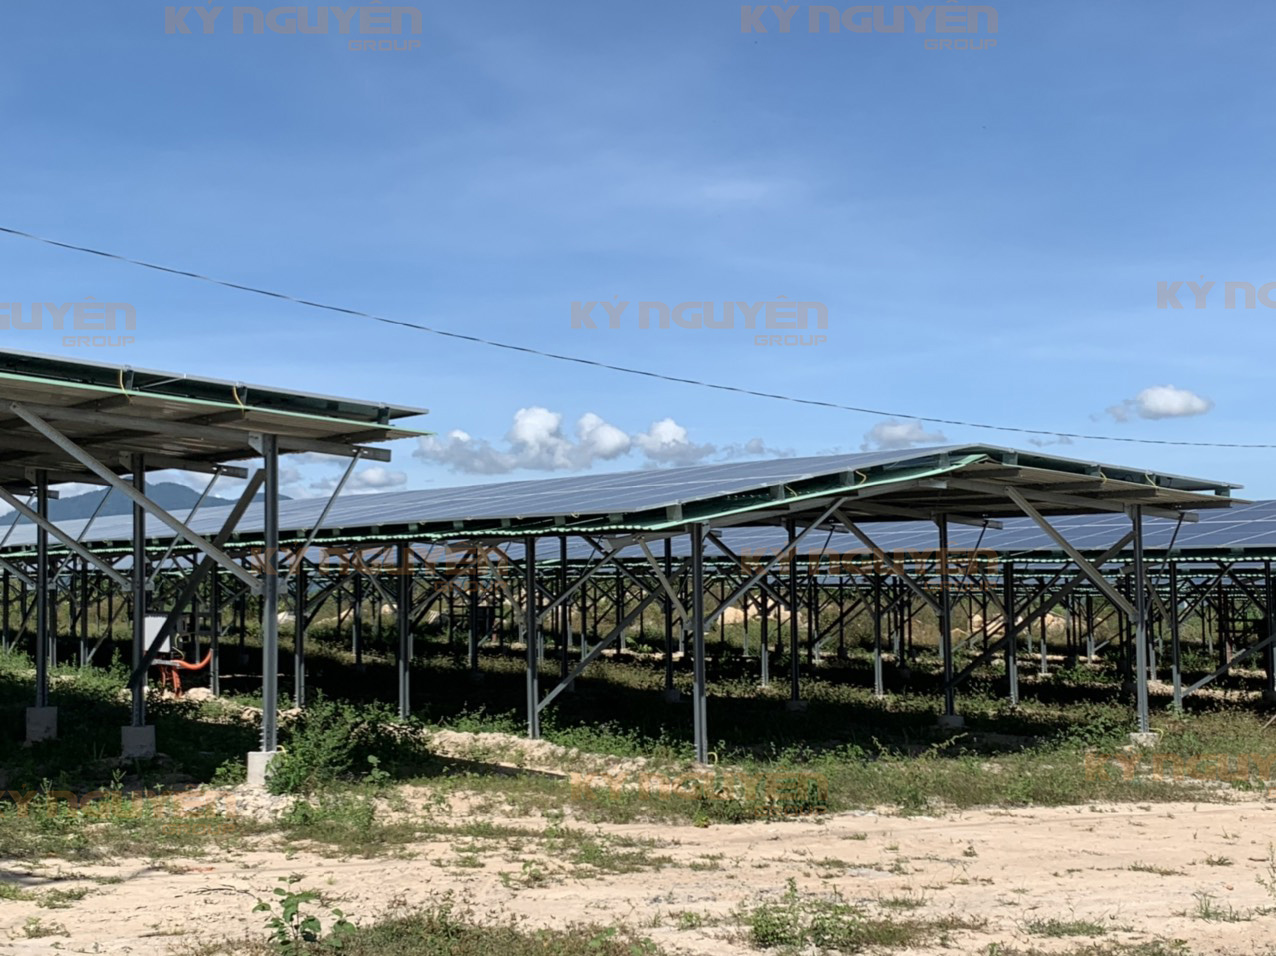 Trang trại Nông nghiệp kết hợp Điện mặt trời Bắc Bình công suất 3MW